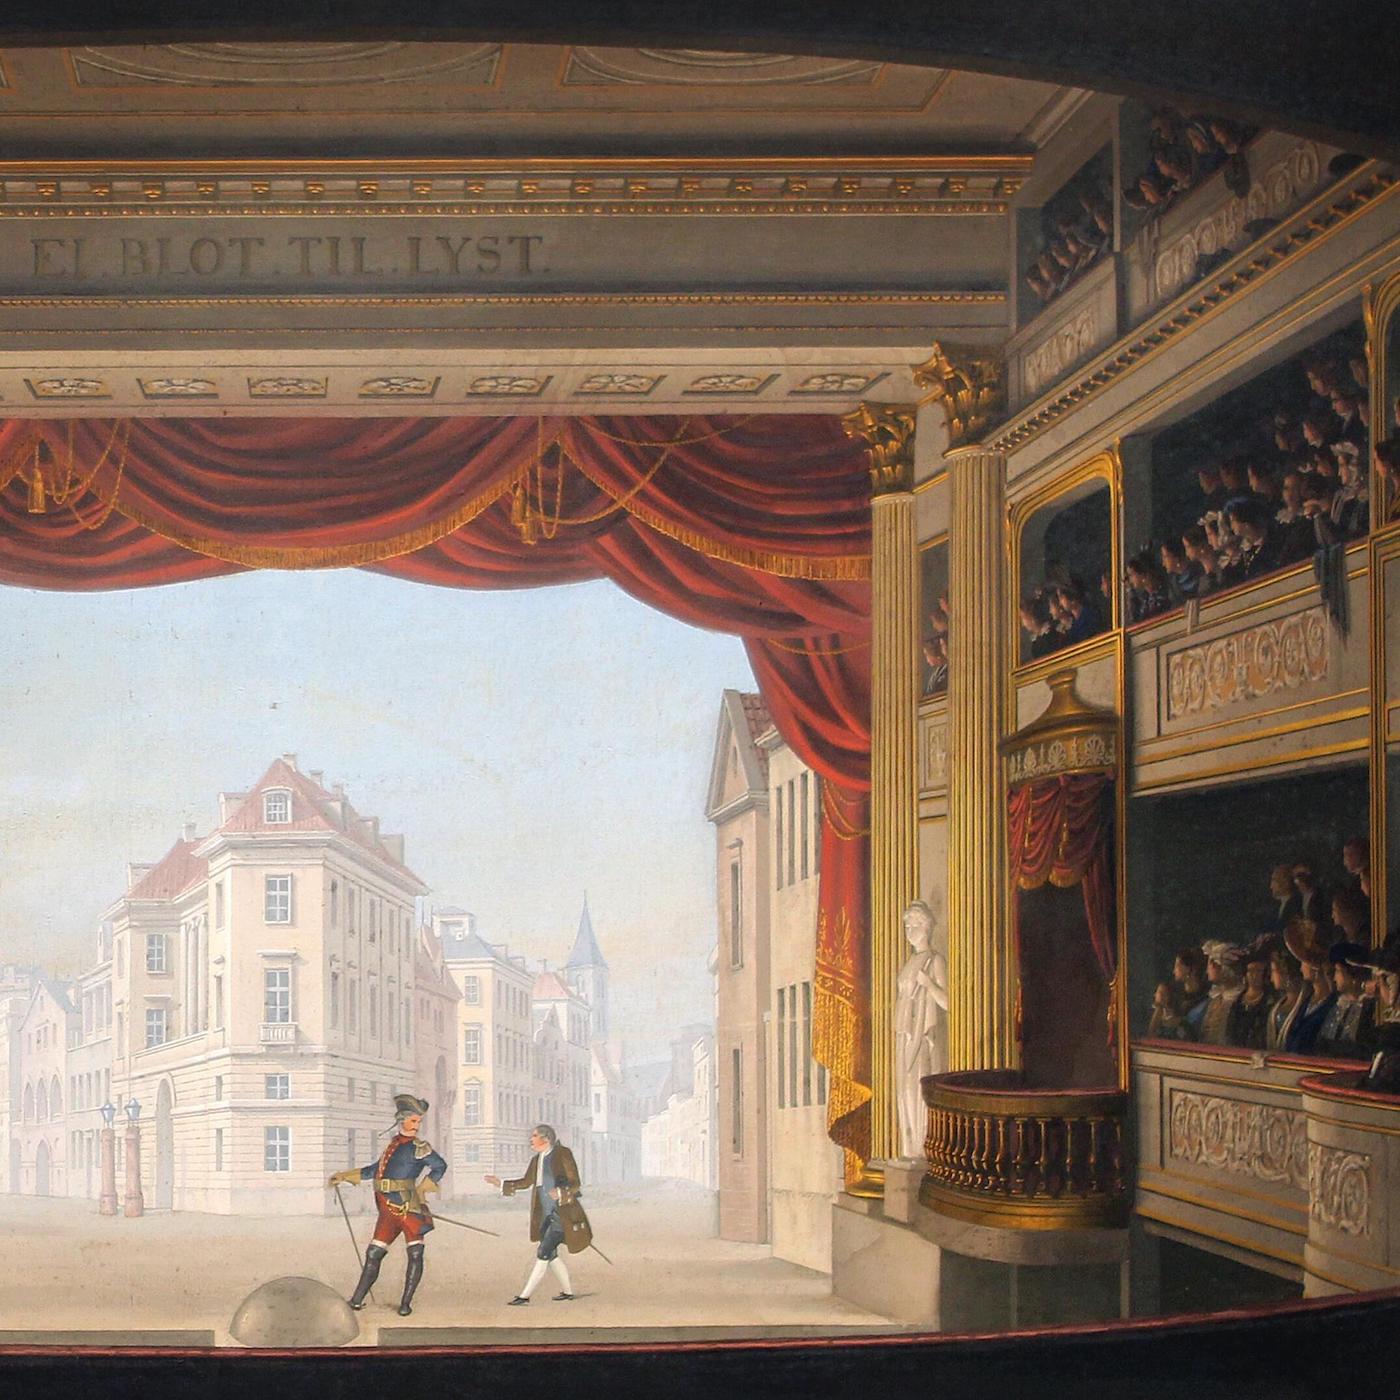 "Det indvendige af Det kgl. teater under fremstillingen af Jacob v. Thyboe" af Christian Ferdinand Christensen